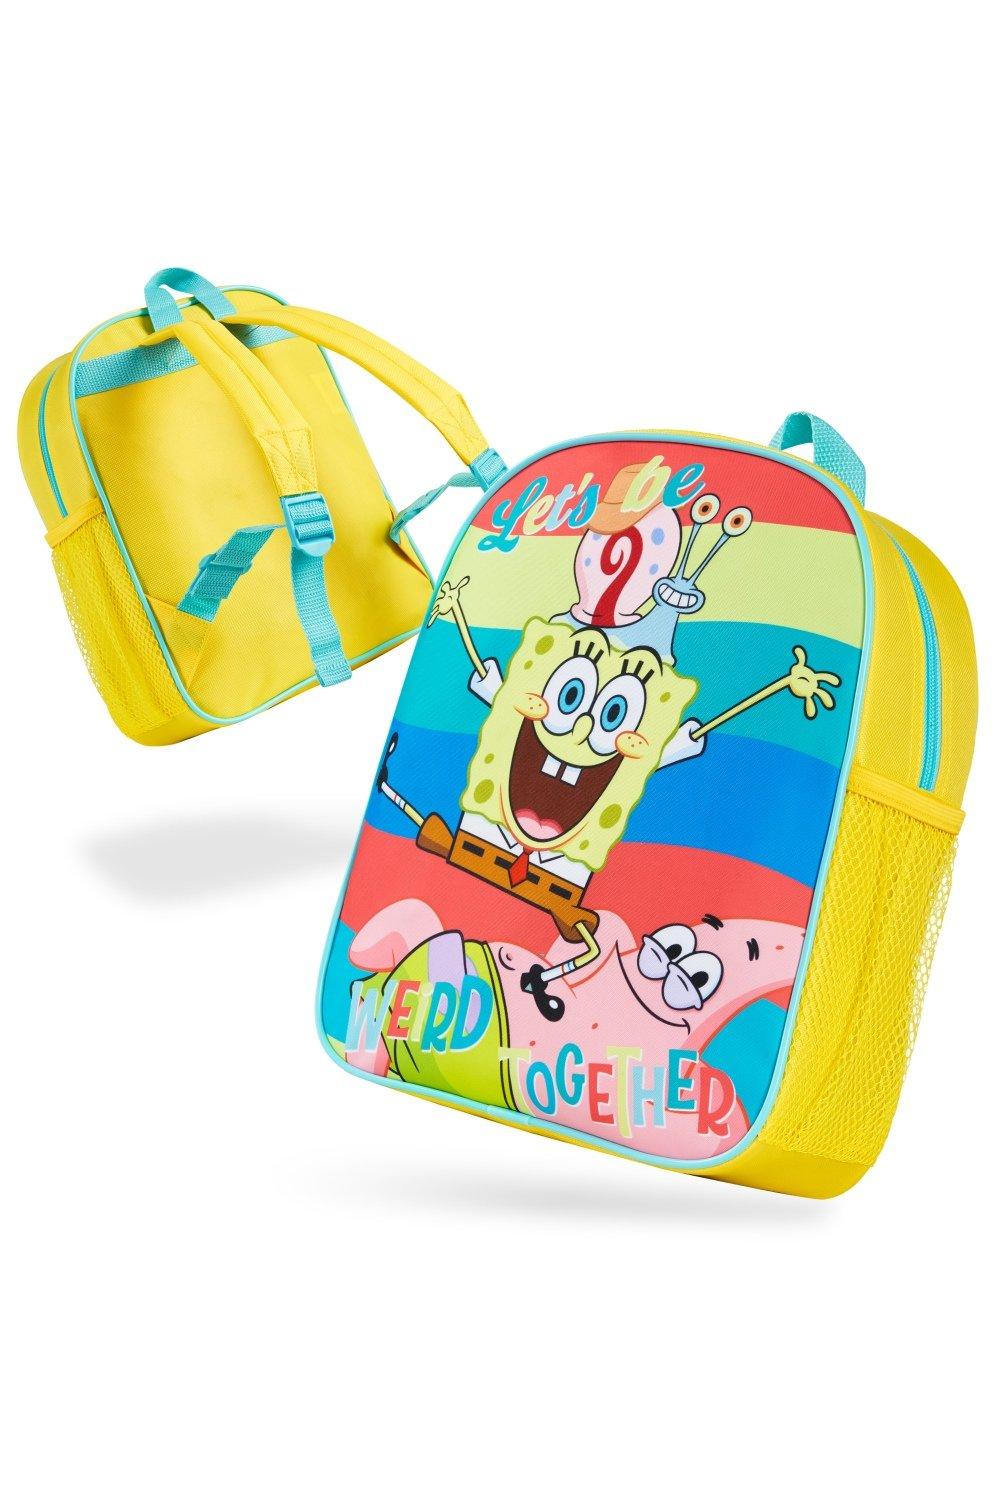 Детский рюкзак «Губка Боб Квадратные Штаны» SpongeBob SquarePants, мультиколор конструктор детский губка боб квадратные штаны